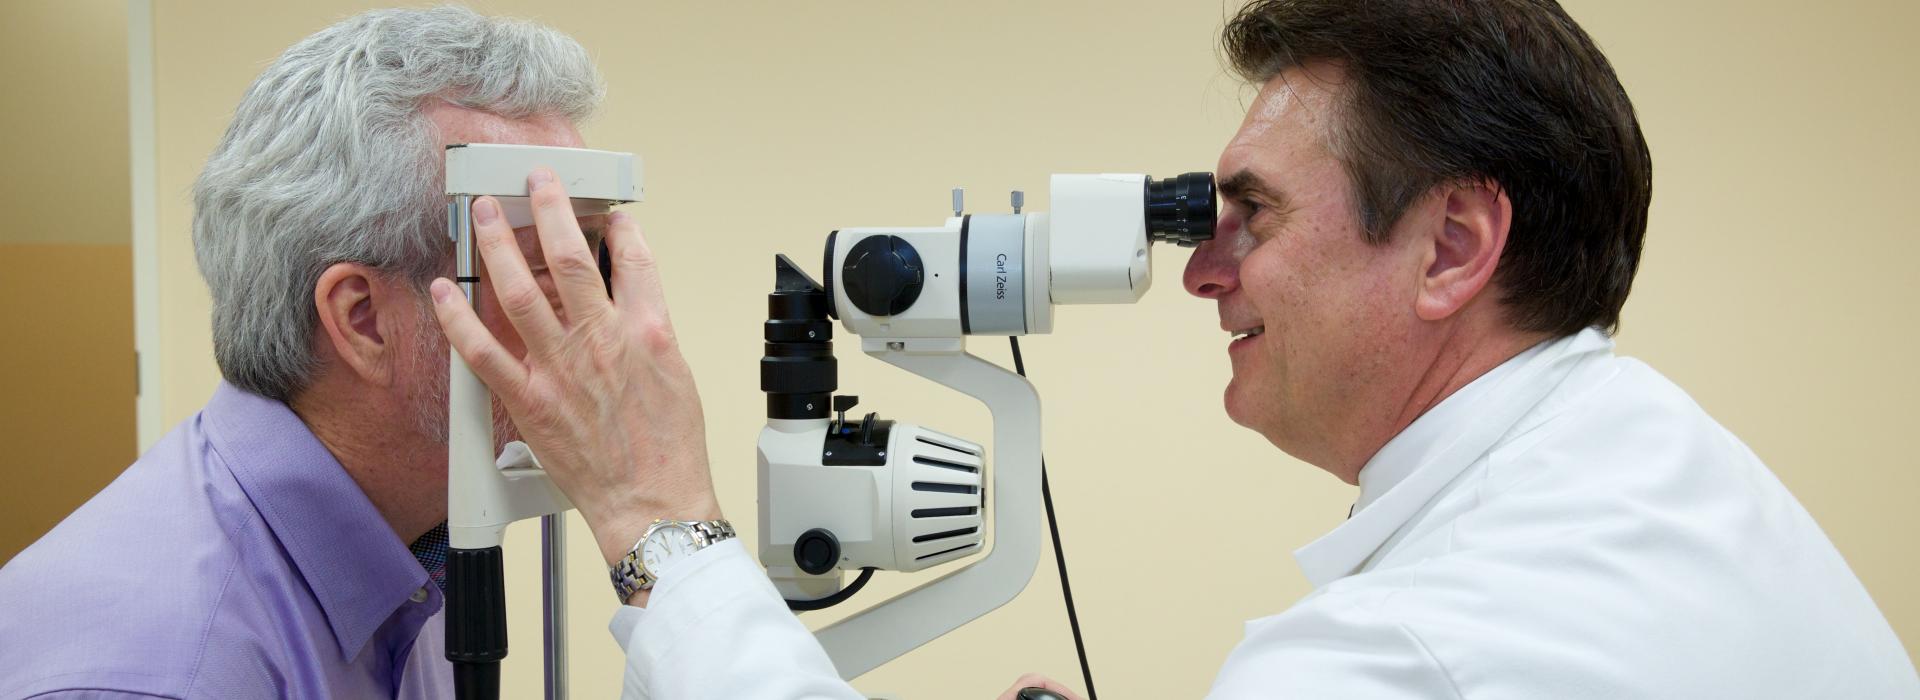 Adult eye examination at Ketchum Health